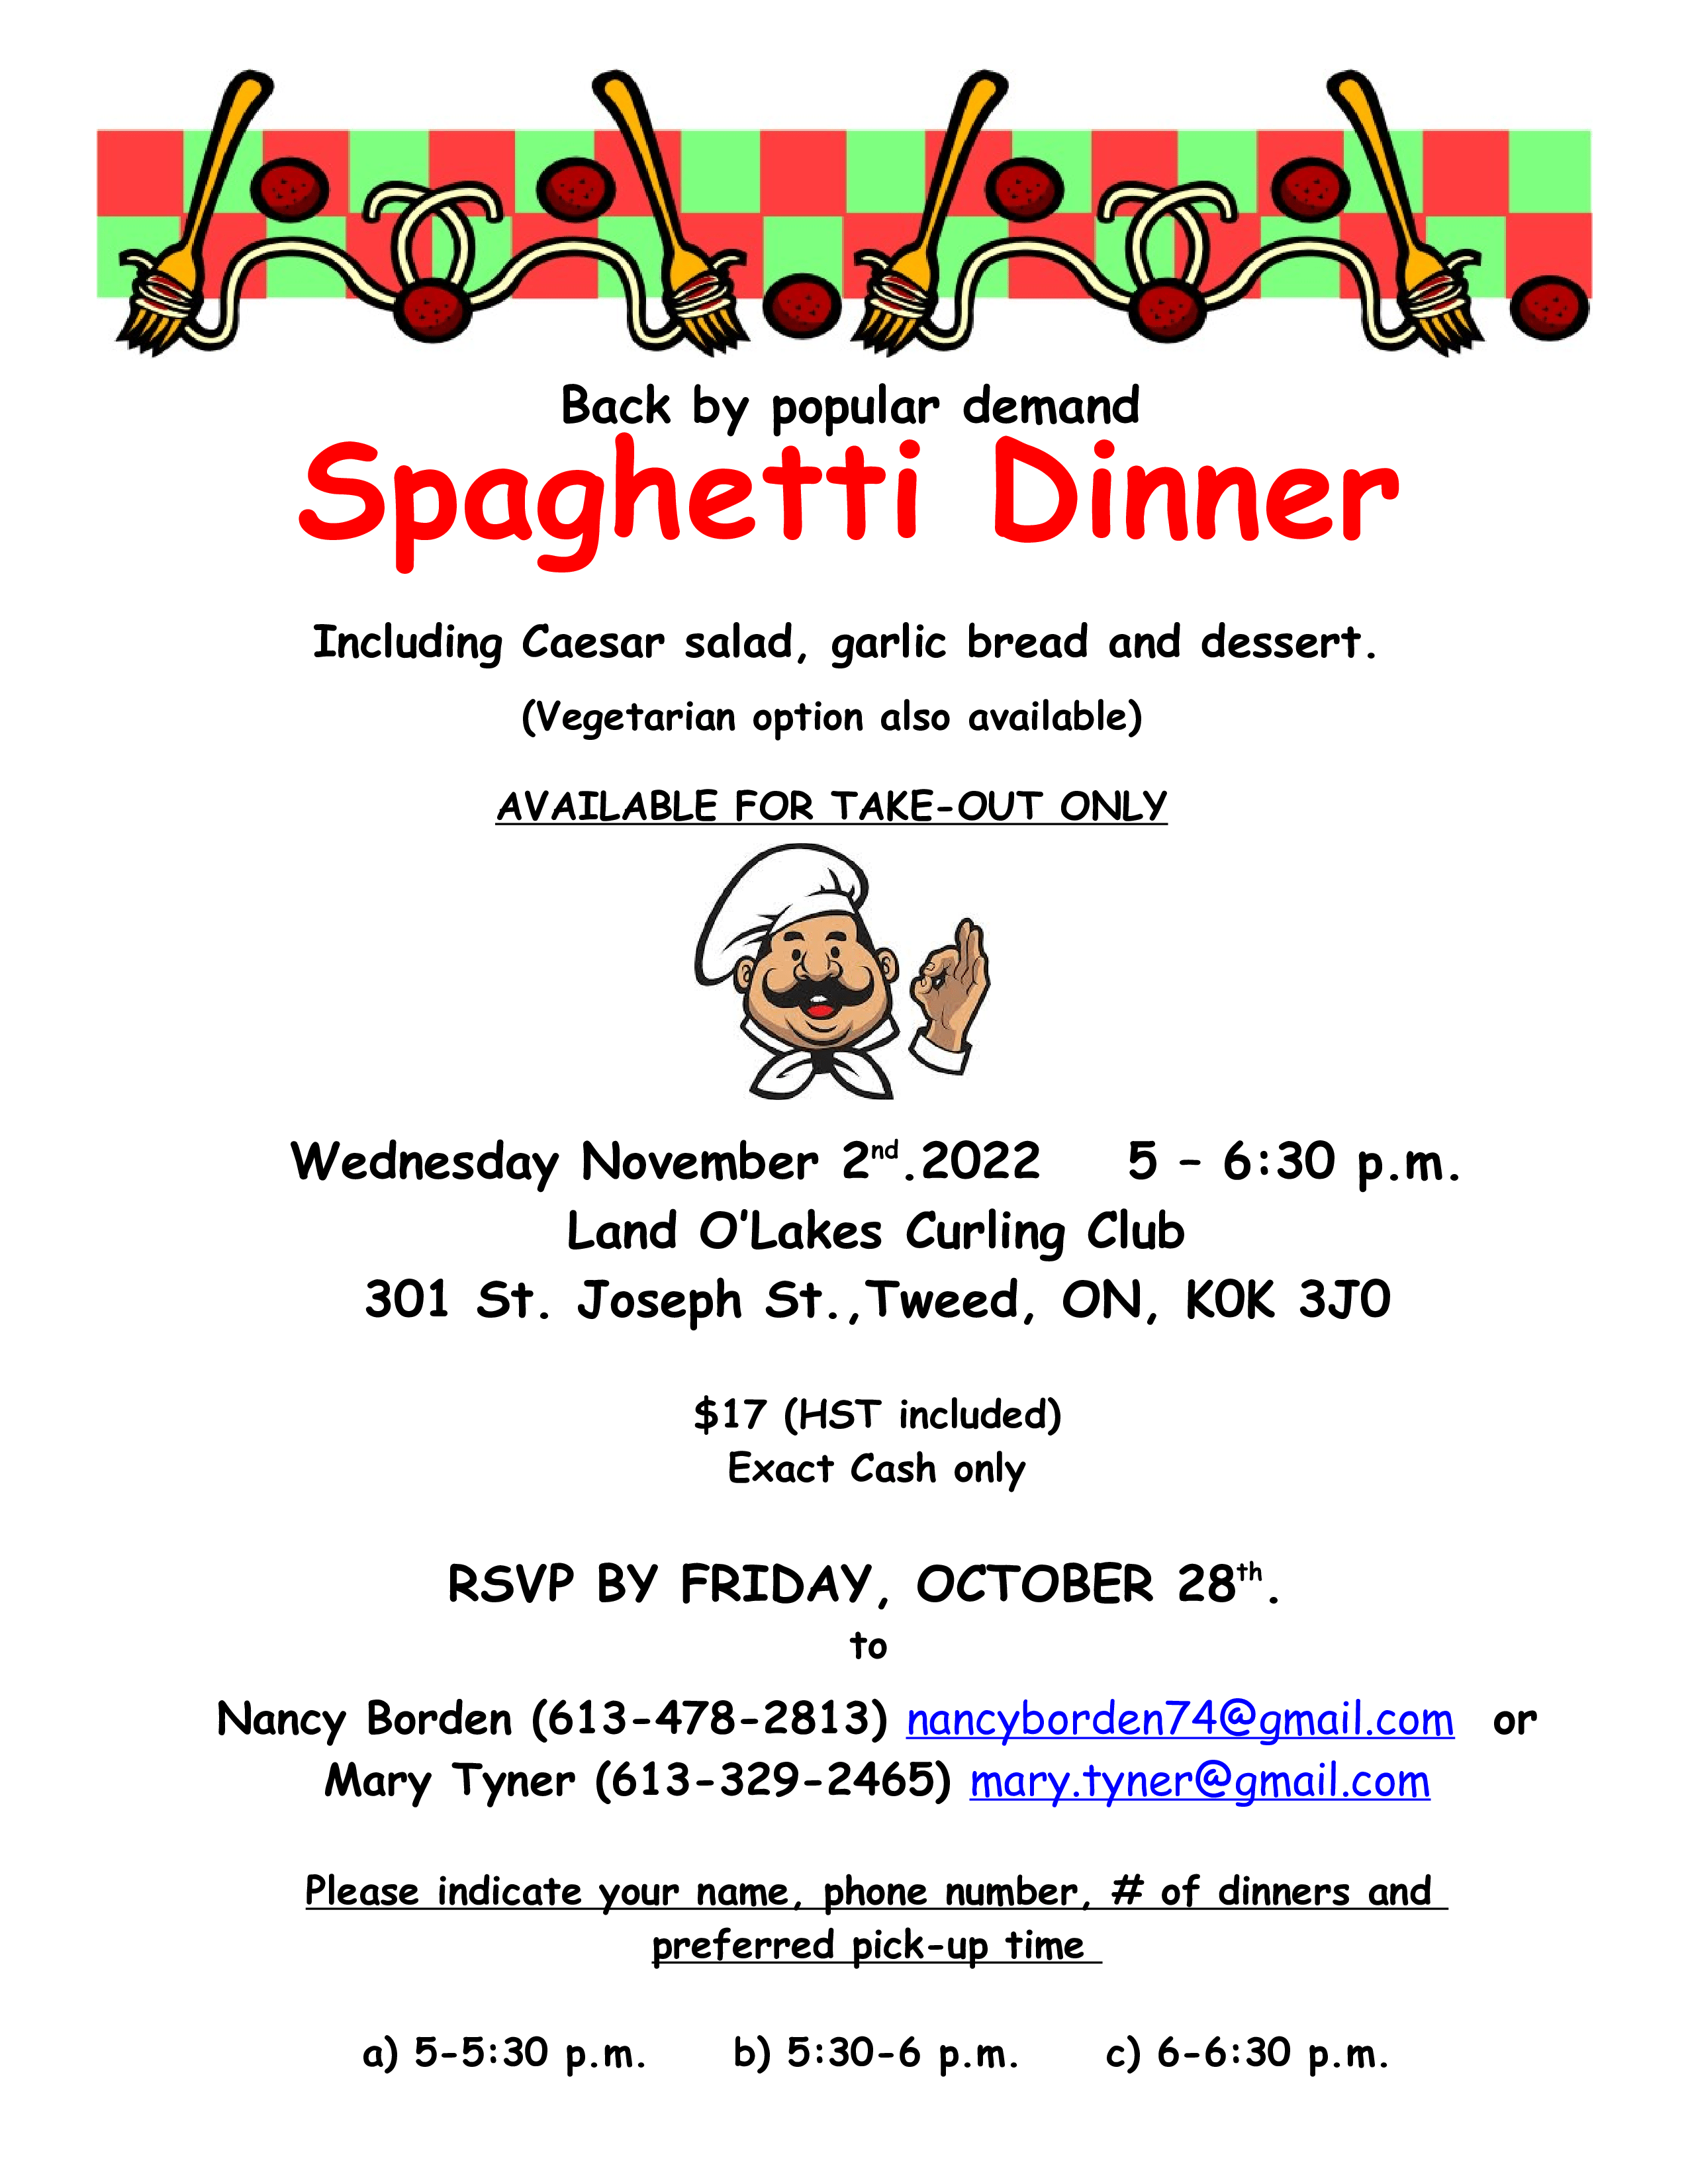 Spaghetti Dinner Flyer 2022